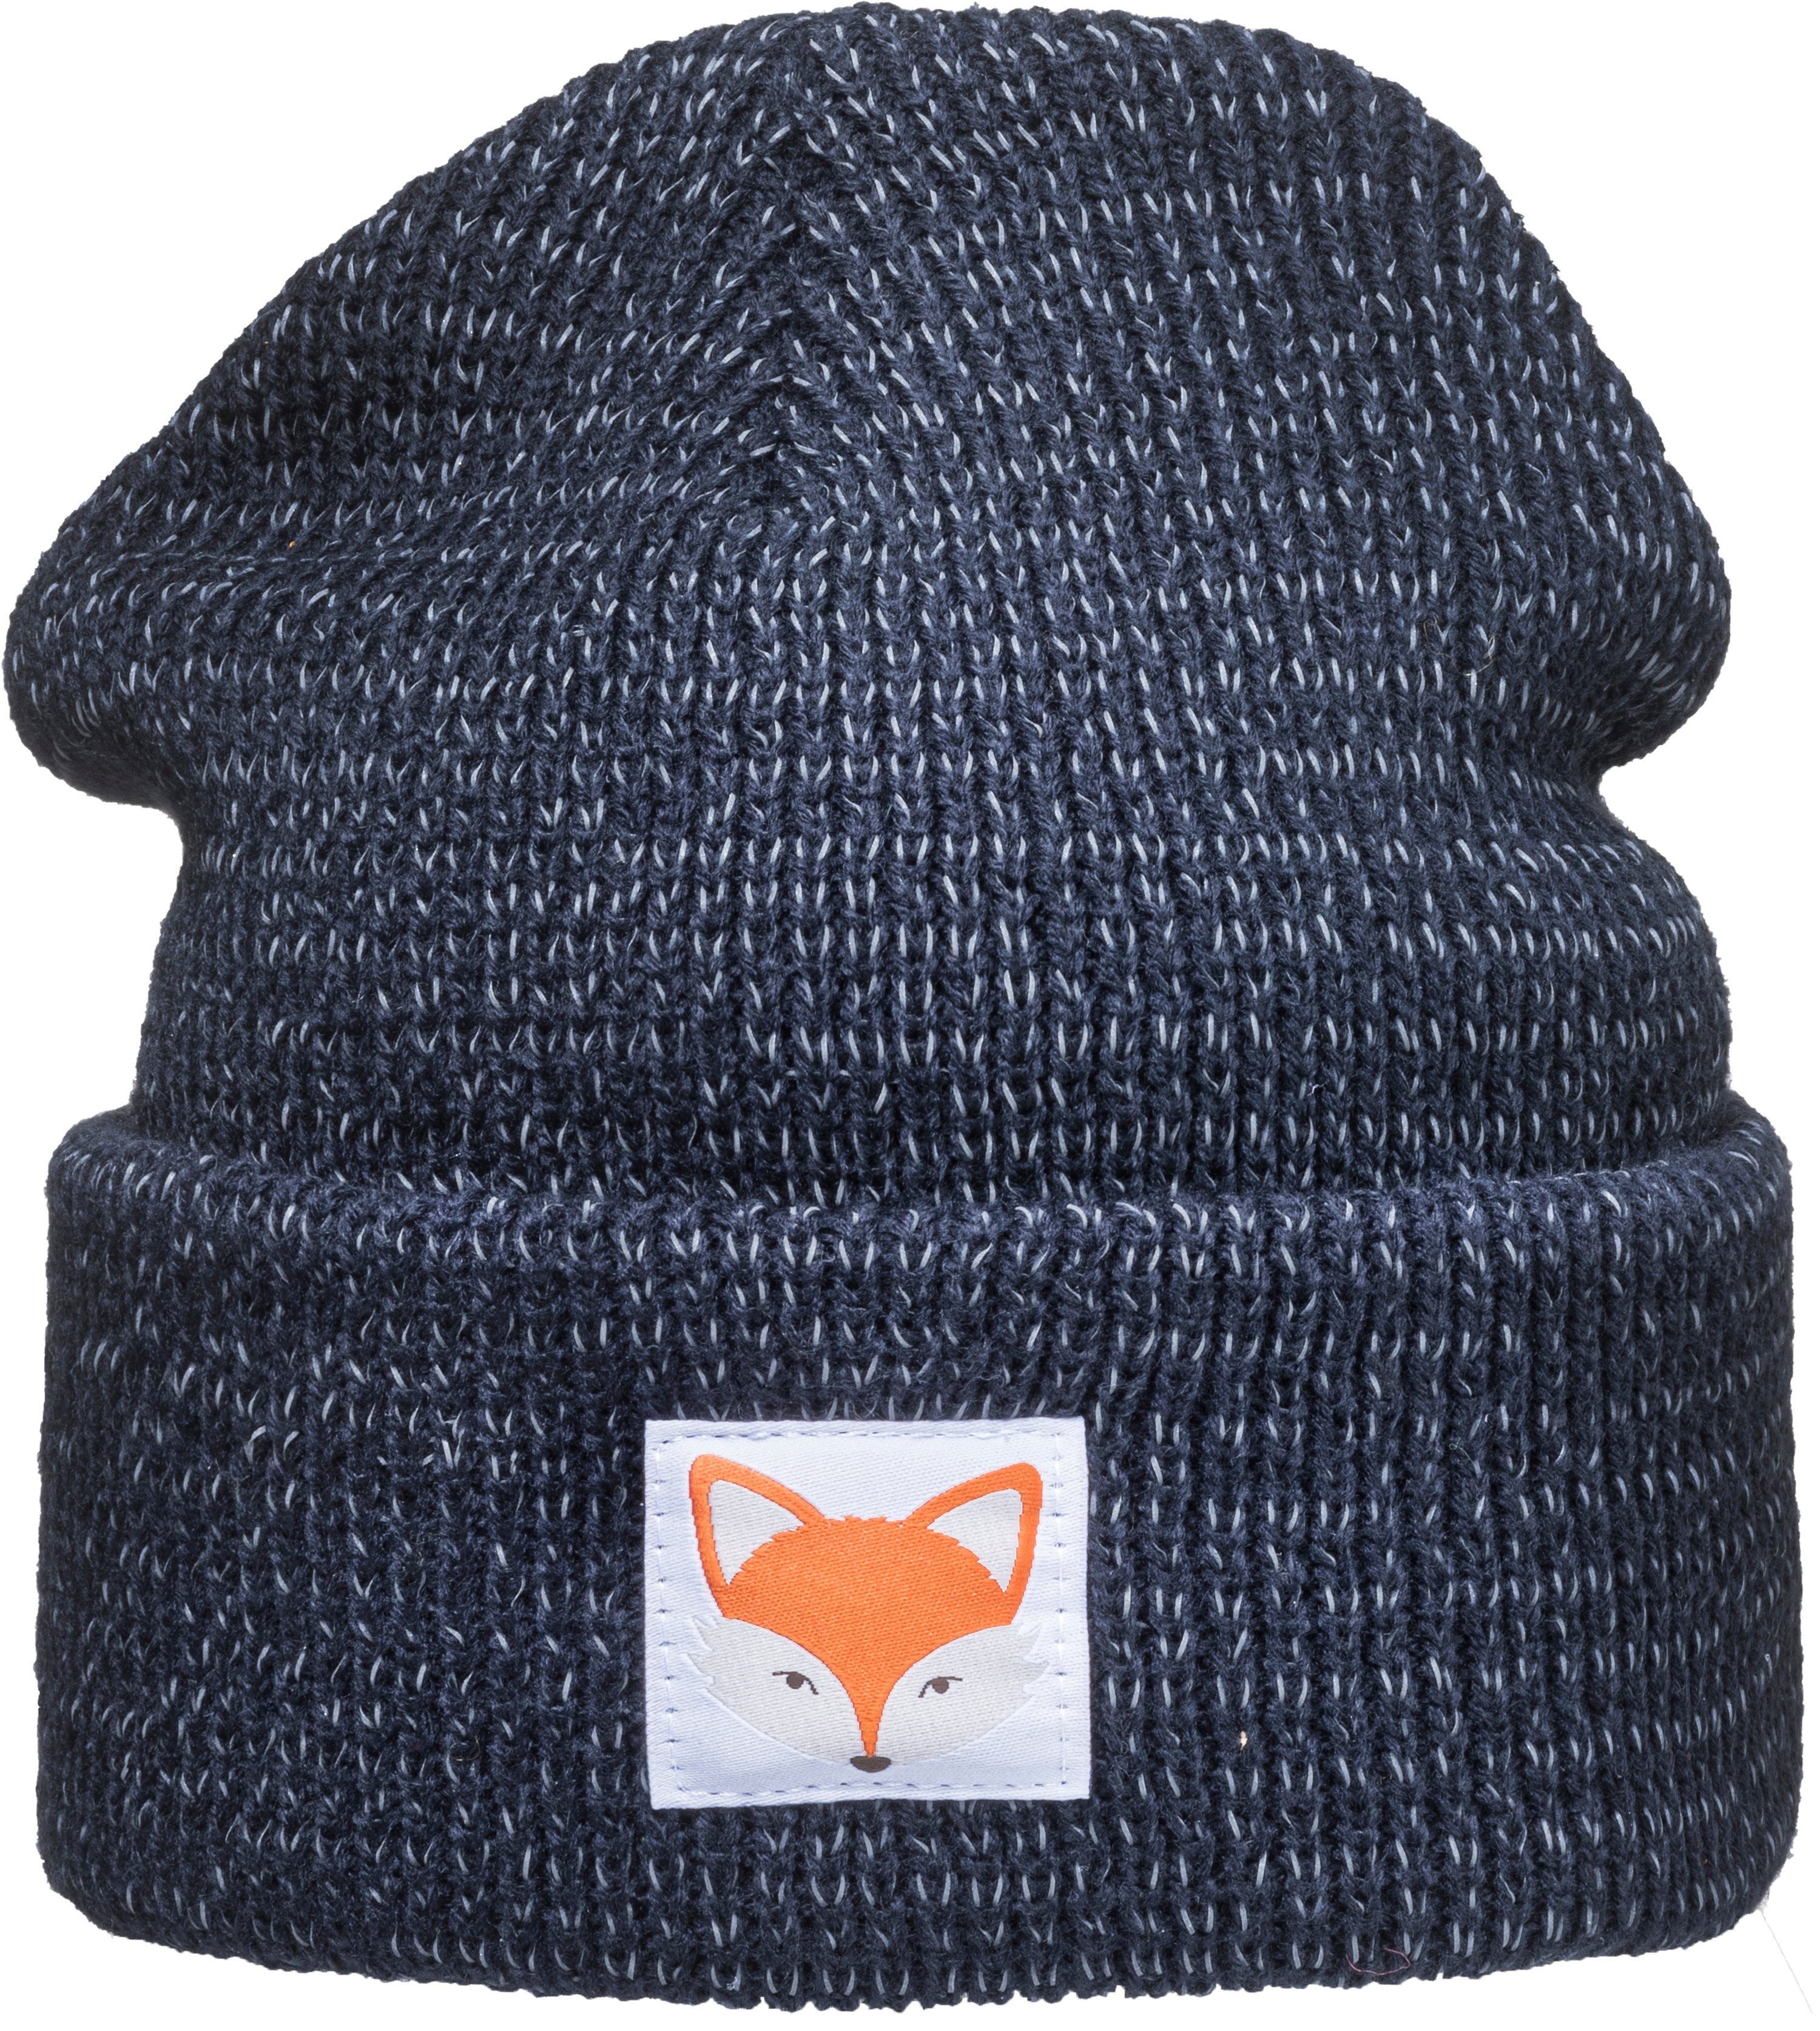 Baddery Beanie Reflektierende Mütze: Fuchs - Fox Tiere Wald Reflektor Sichtbarkeit doppellagiger Strick, hochreflektierende Fasern, Patch-Motiv, One Size | Beanies